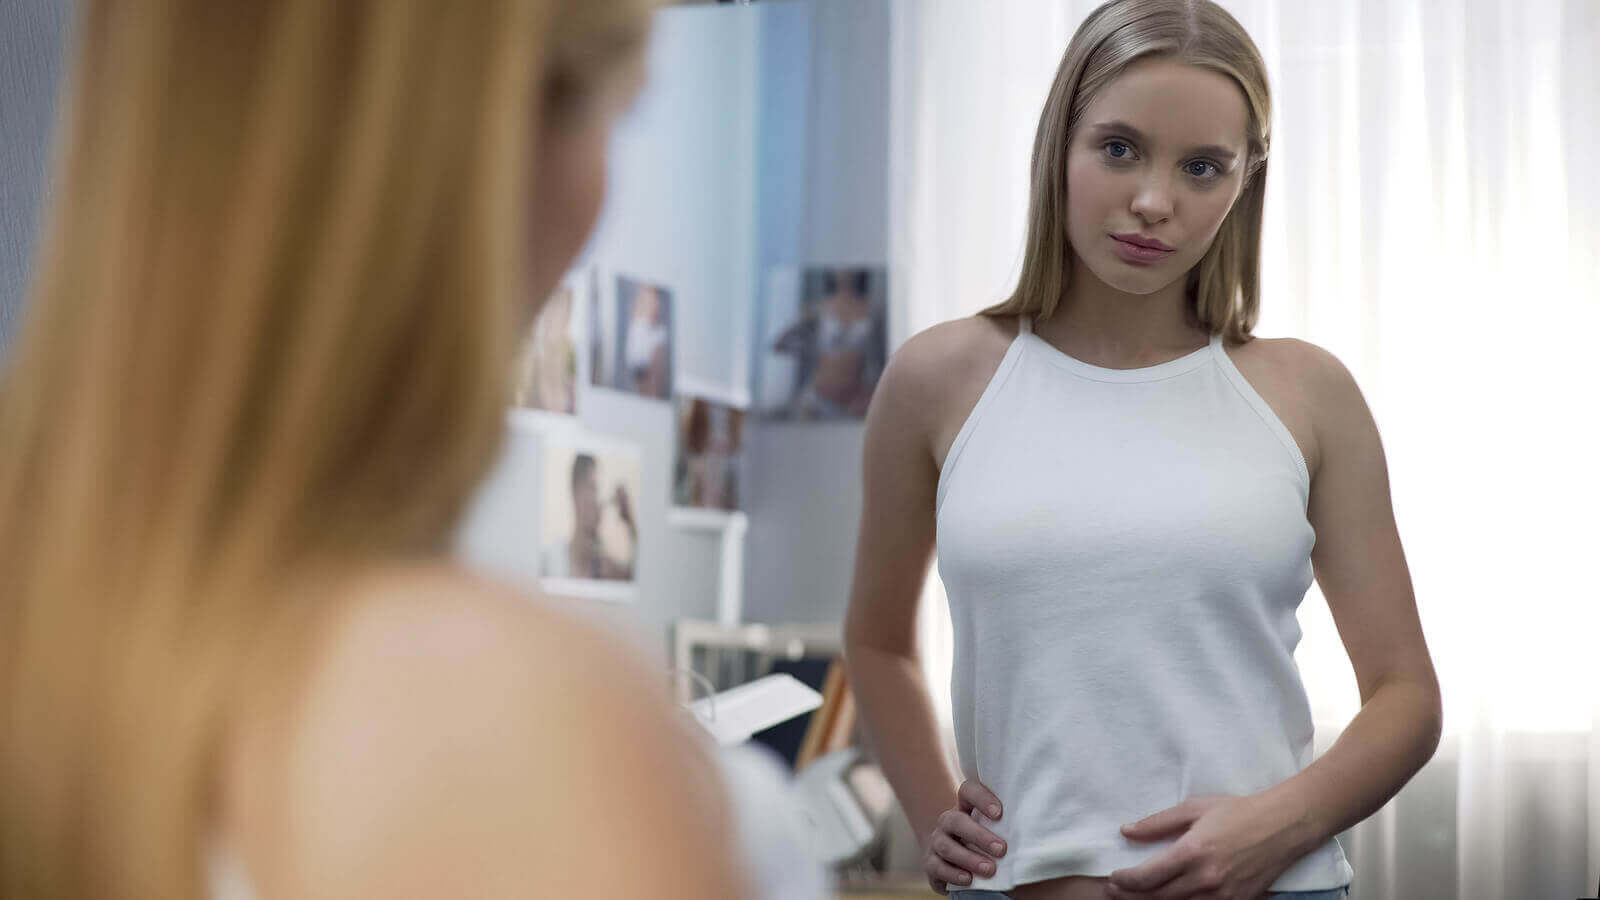 Une adolescente qui se regarde dans un miroir.